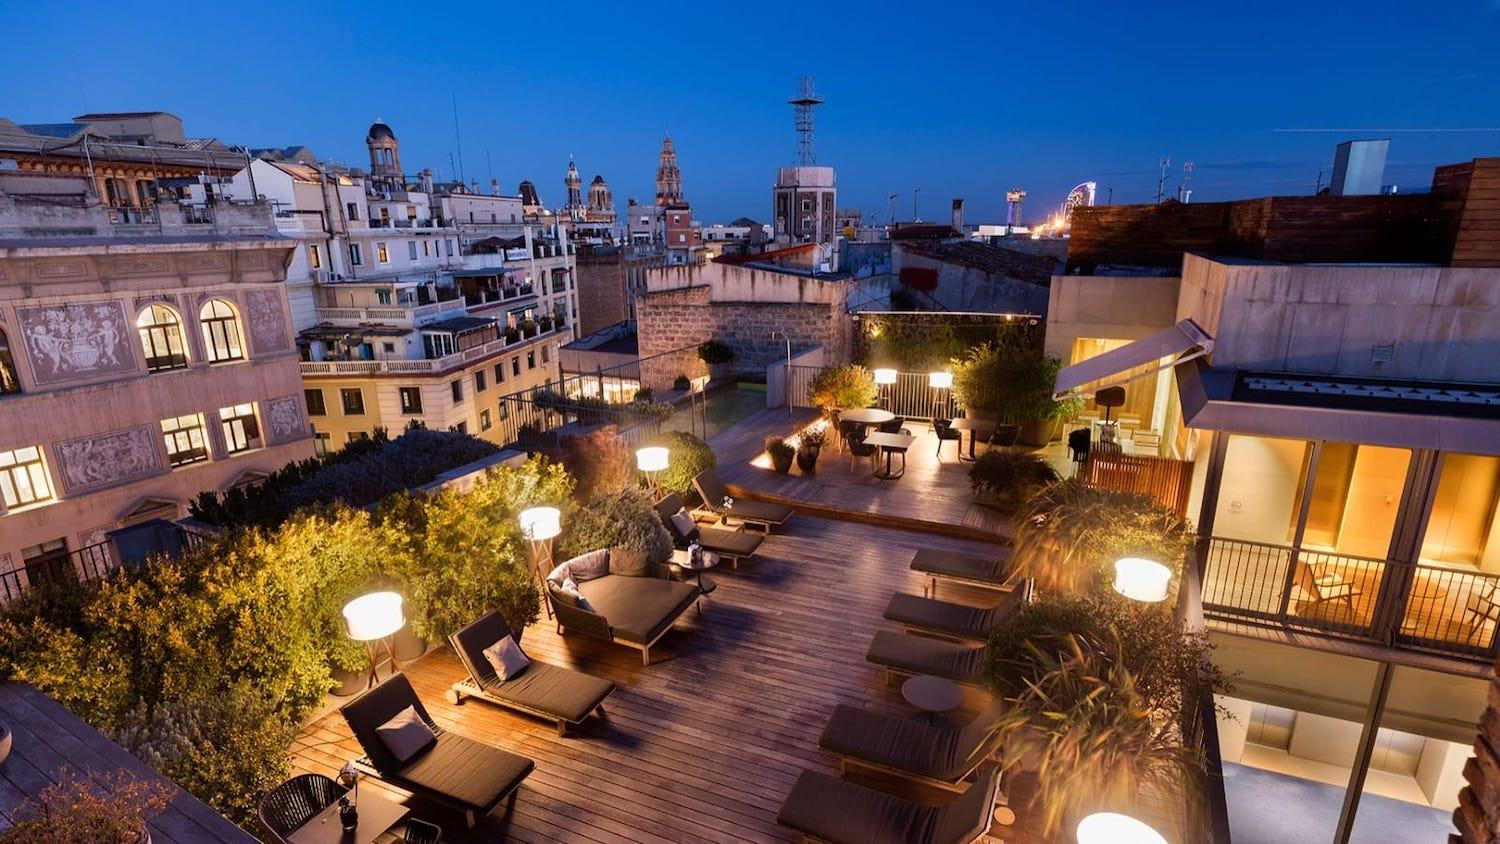 Купить недвижимость в Барселоне с террасой на крыше и прекрасными видами? Top House Realty агентство недвижимости в Барселоне.